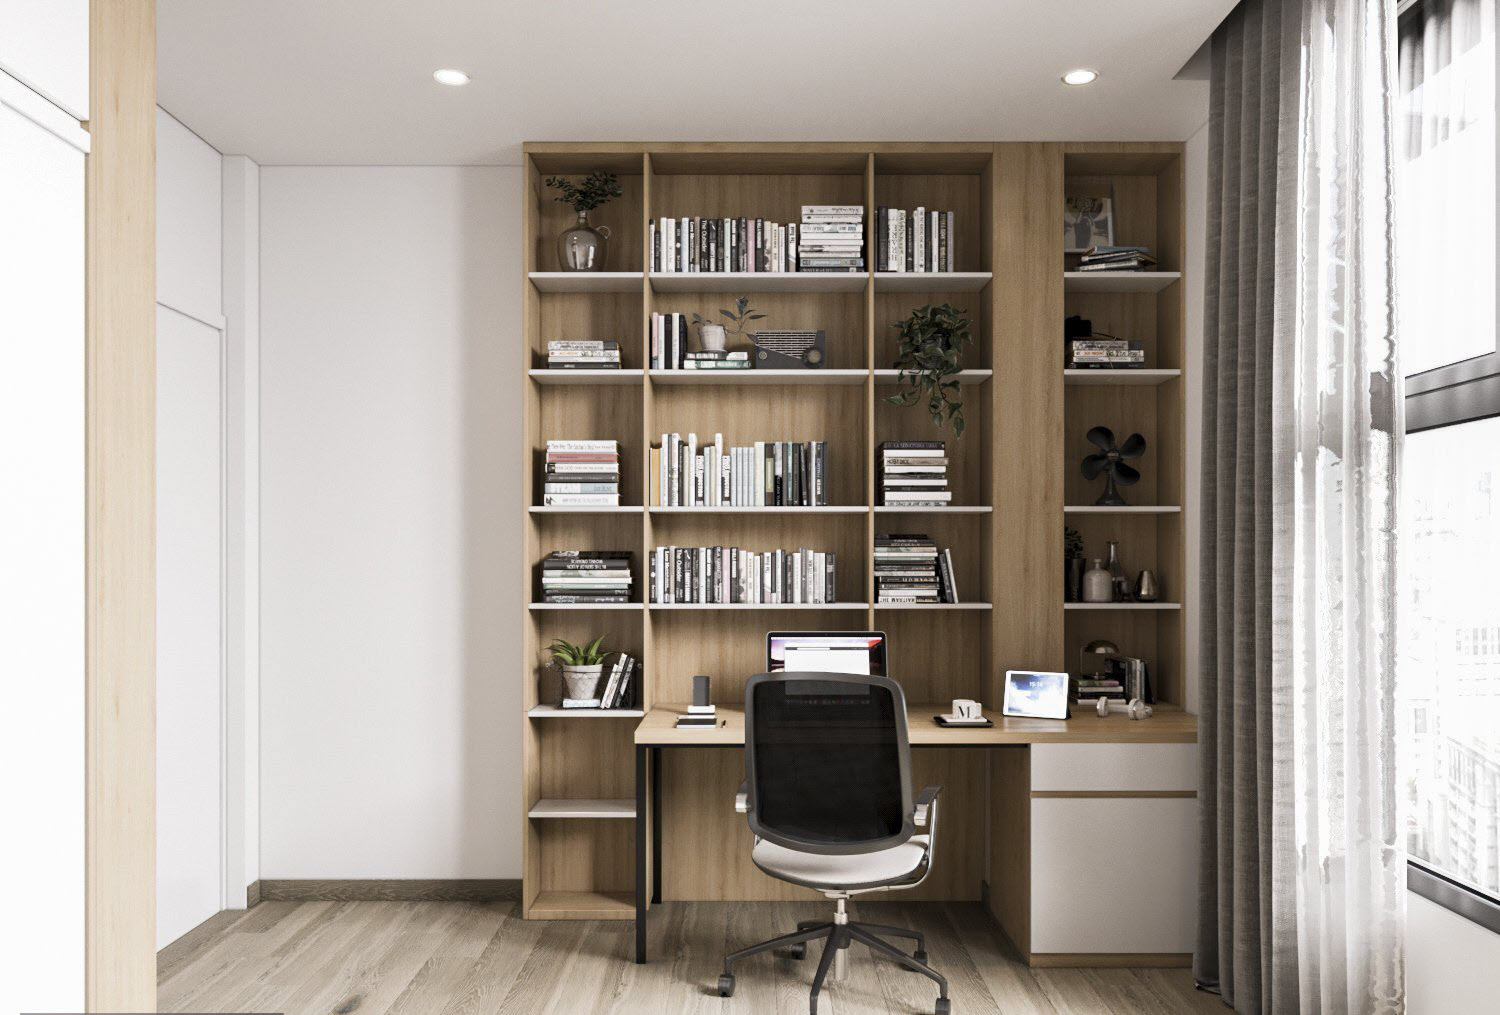 Văn phòng làm việc tại nhà với khung cửa kính cao rộng cho phép ánh sáng tự nhien chan hòa khắp không gian, tạo cảm giác thoáng rộng hơn cho căn phòng.